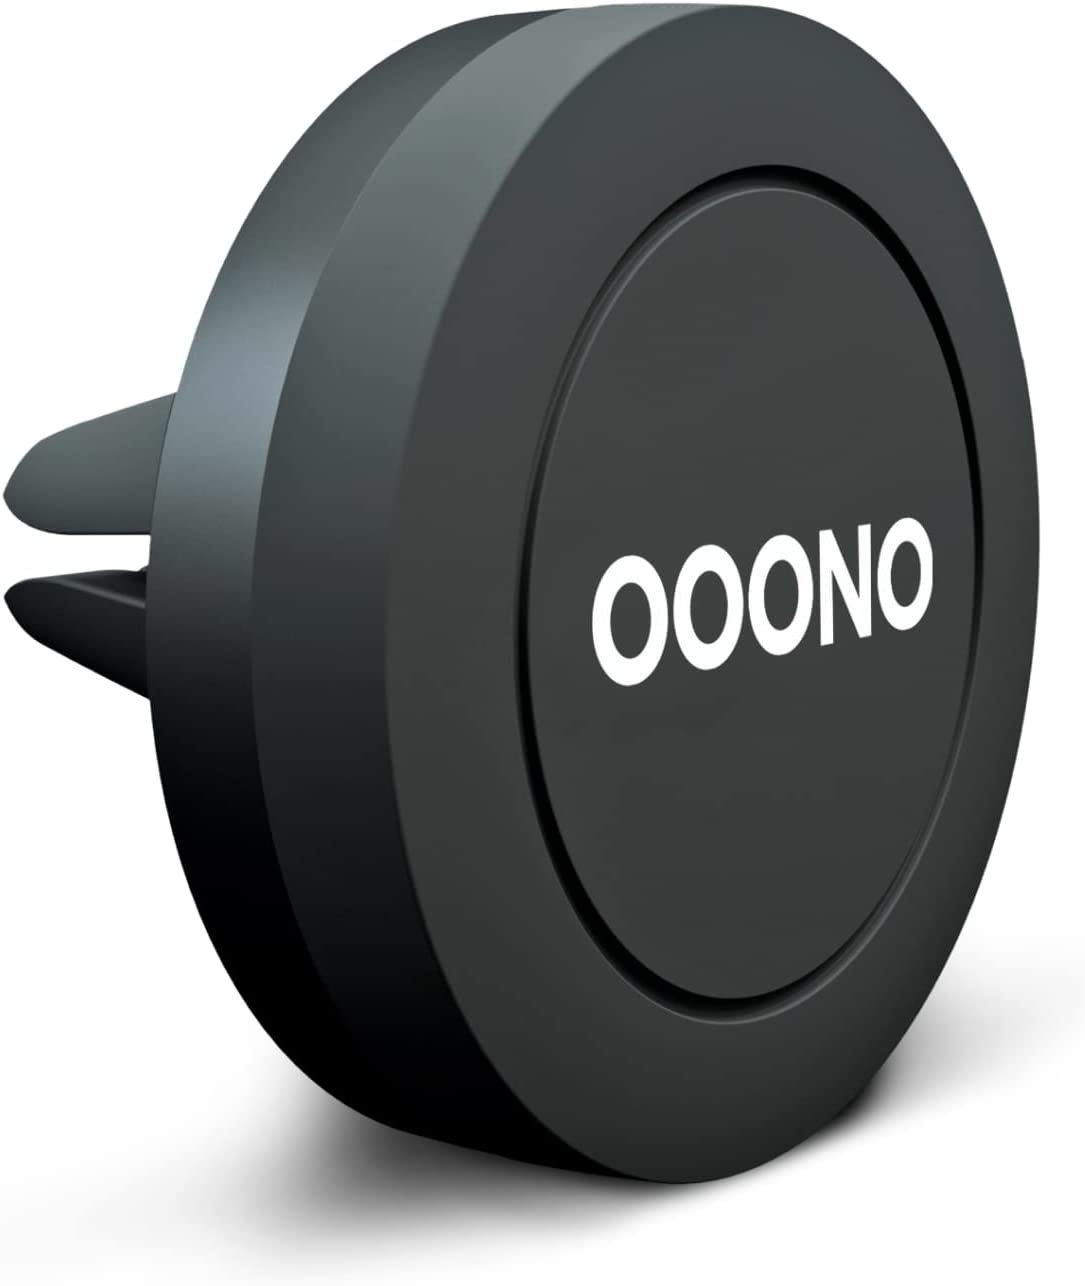 OOONO CO-DRIVER NO1 + Ersatzbatterie : Warnt vor Blitzen in Echtzeit!  Verkehrsalarm (OOONO Blitzewarner + Batterie)